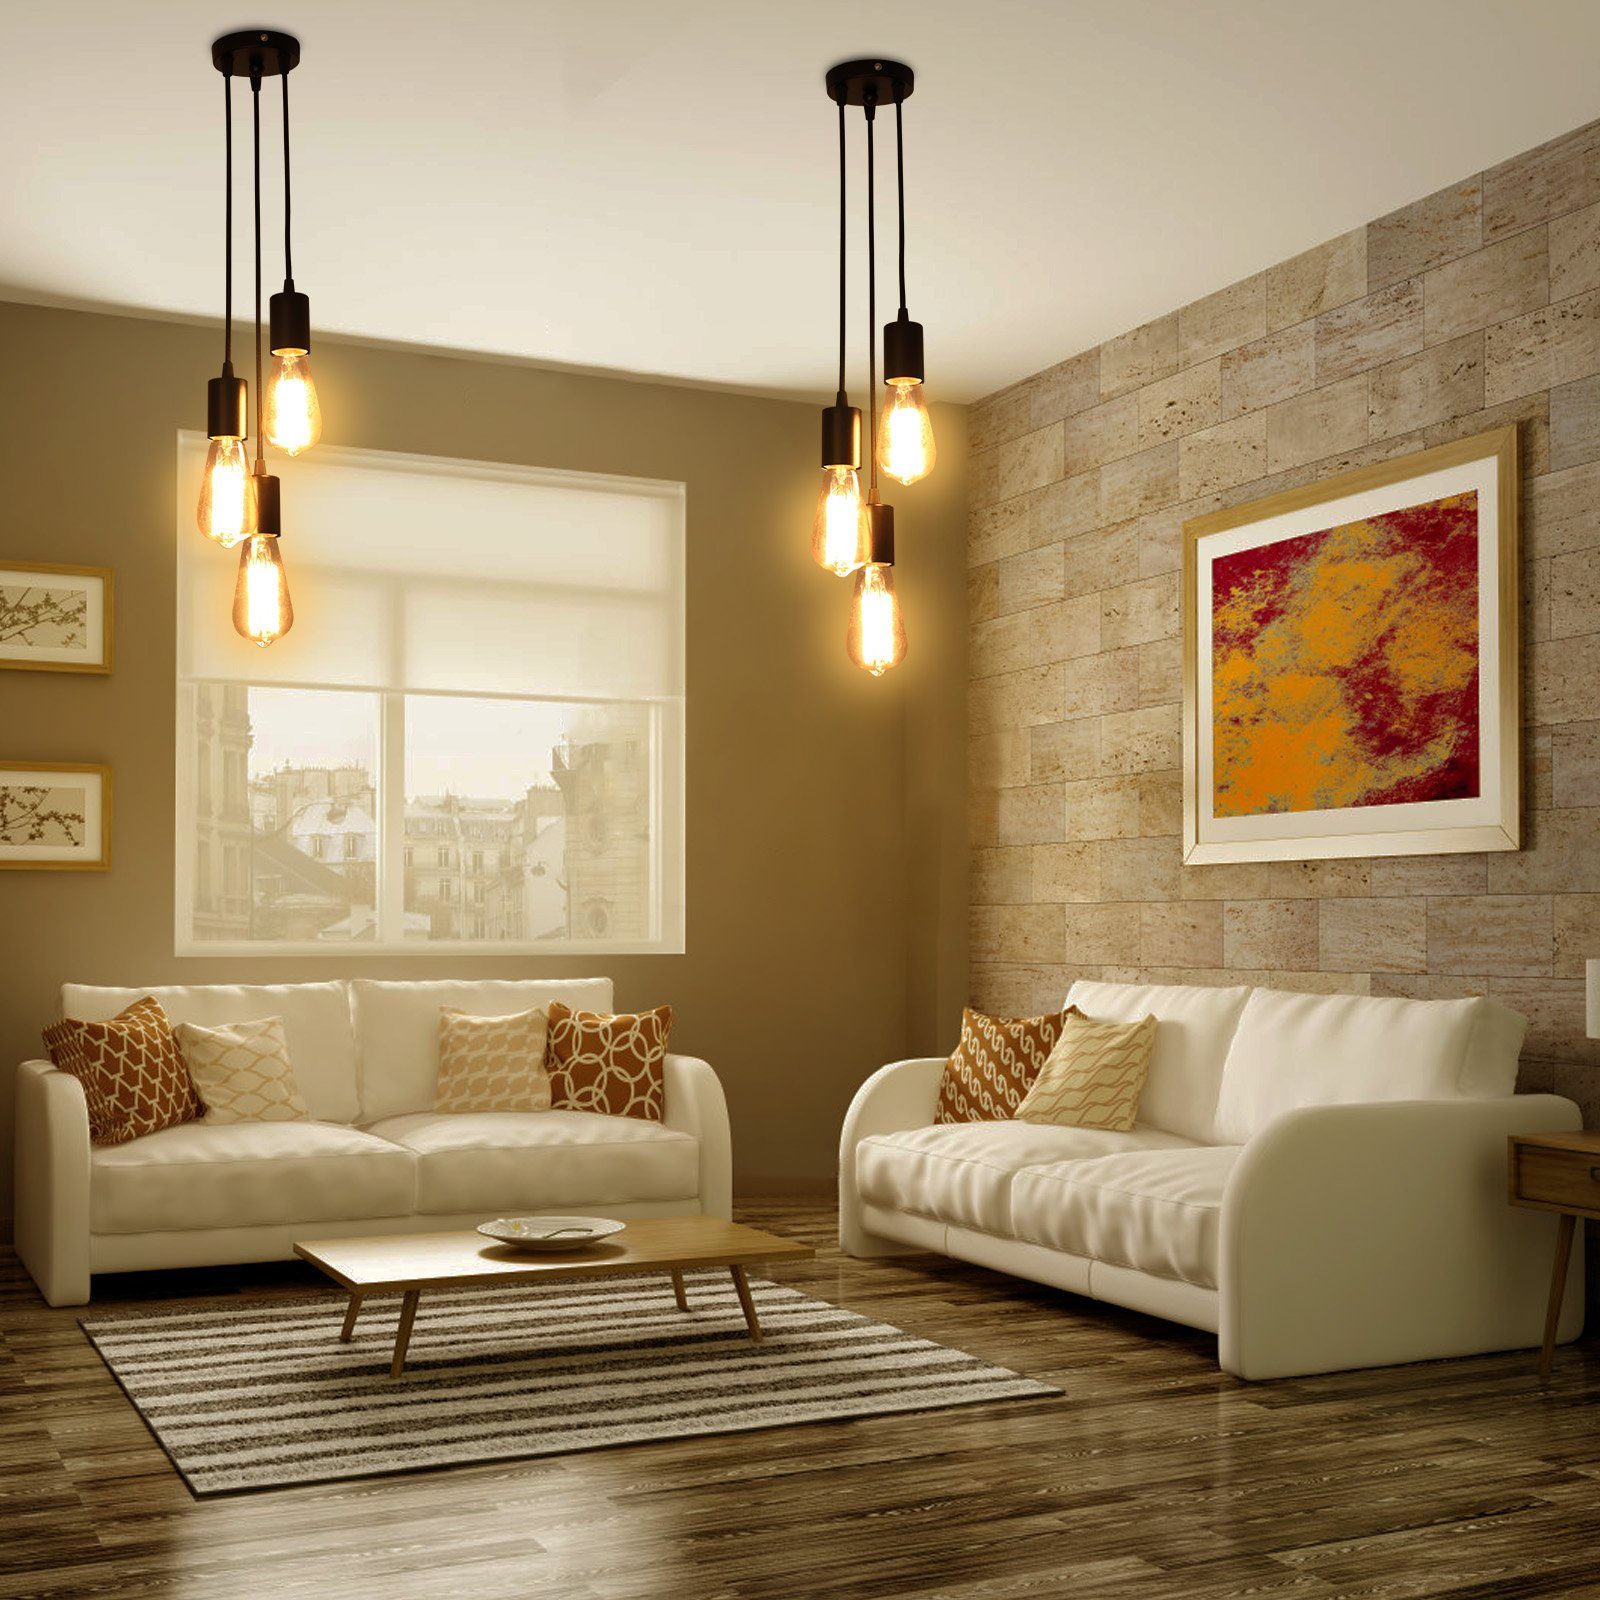 Sunicol LED Pendelleuchte 3-Lichter, E27, DIY Modern Industrial Schlafzimmer Pendelleuchte, Vintage für Weiß Retro Hängeleuchte, Restaurant Wohnzimmer Lampe